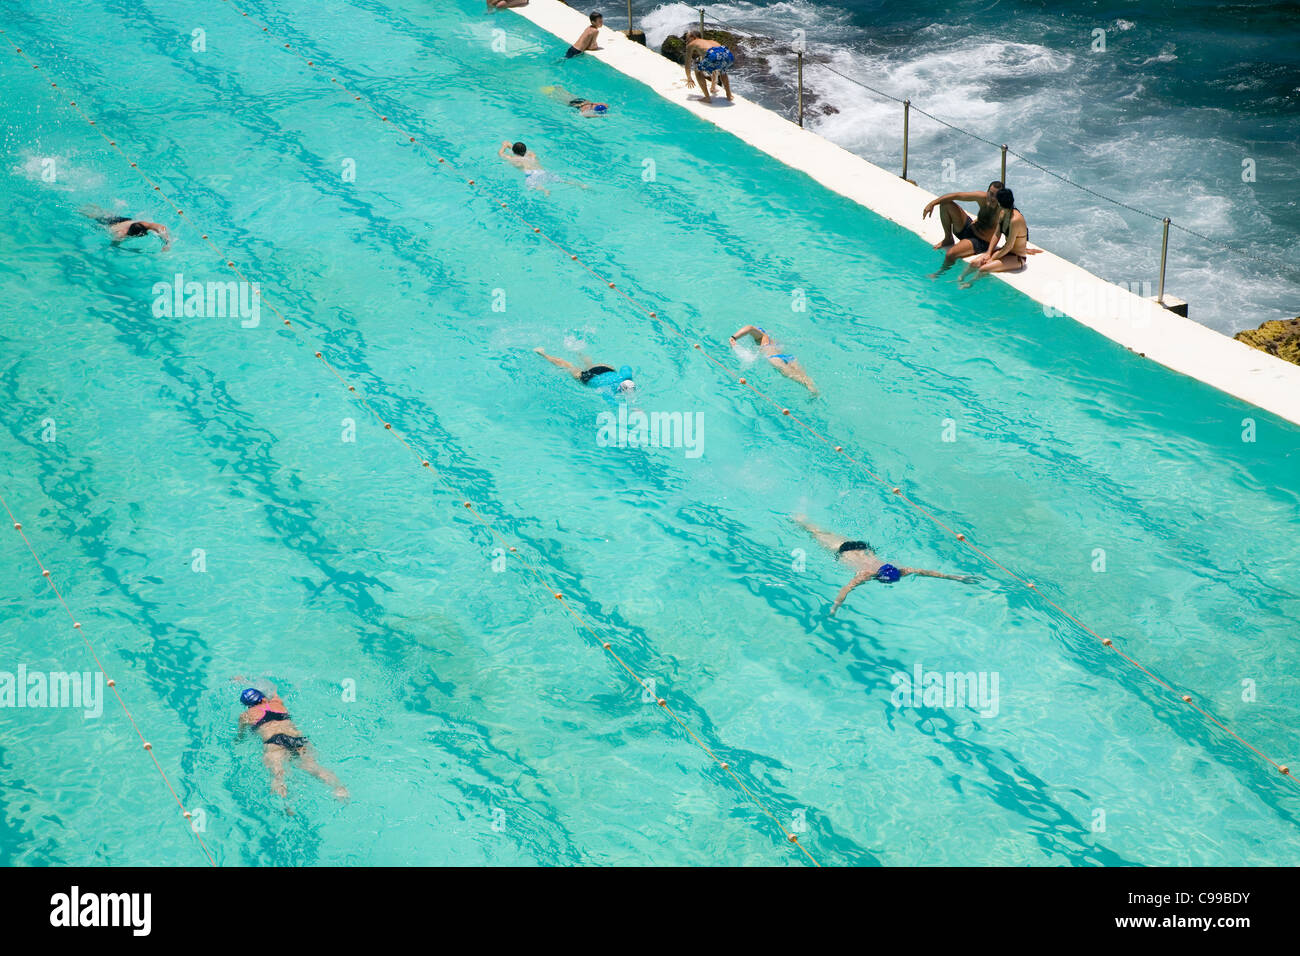 Les nageurs à l'Icebergs de Bondi piscine, également connu sous le nom de thermes de Bondi. Bondi Beach, Sydney, New South Wales, Australia Banque D'Images